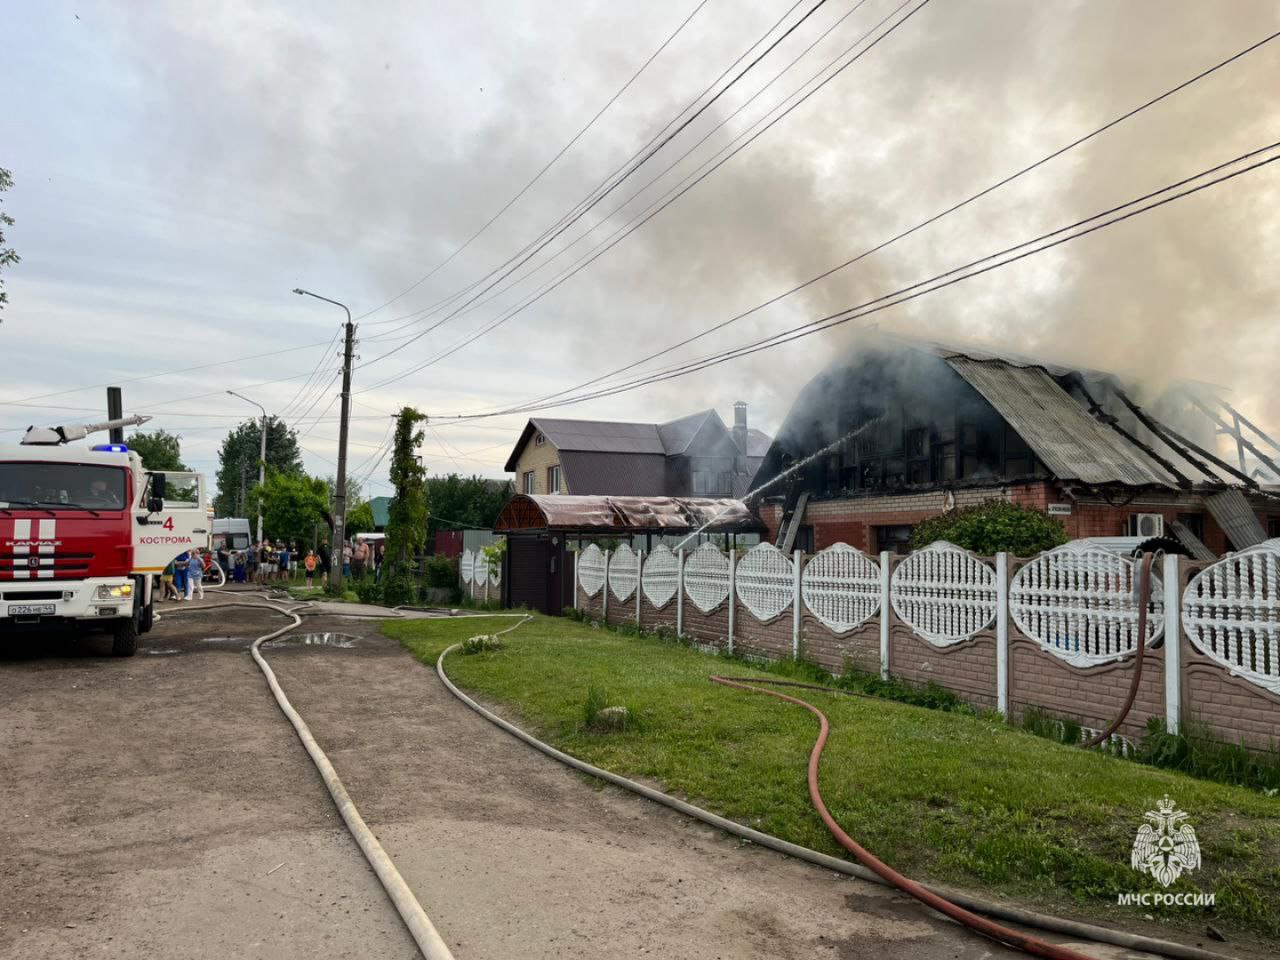 Частный дом горел в Костроме на Буйской. Видео